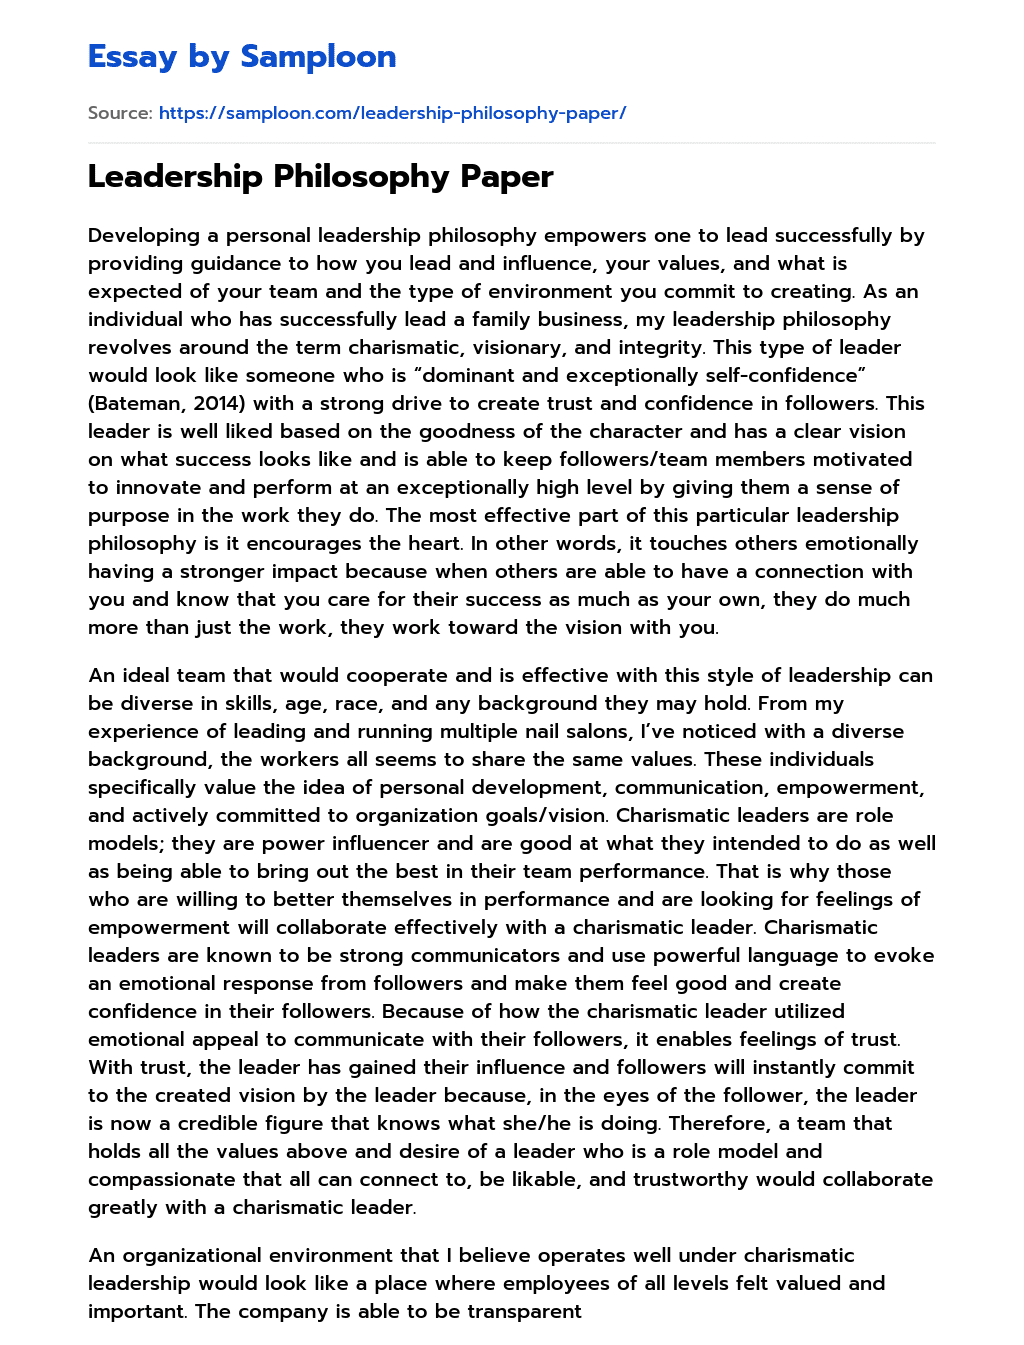 Leadership Philosophy Paper essay